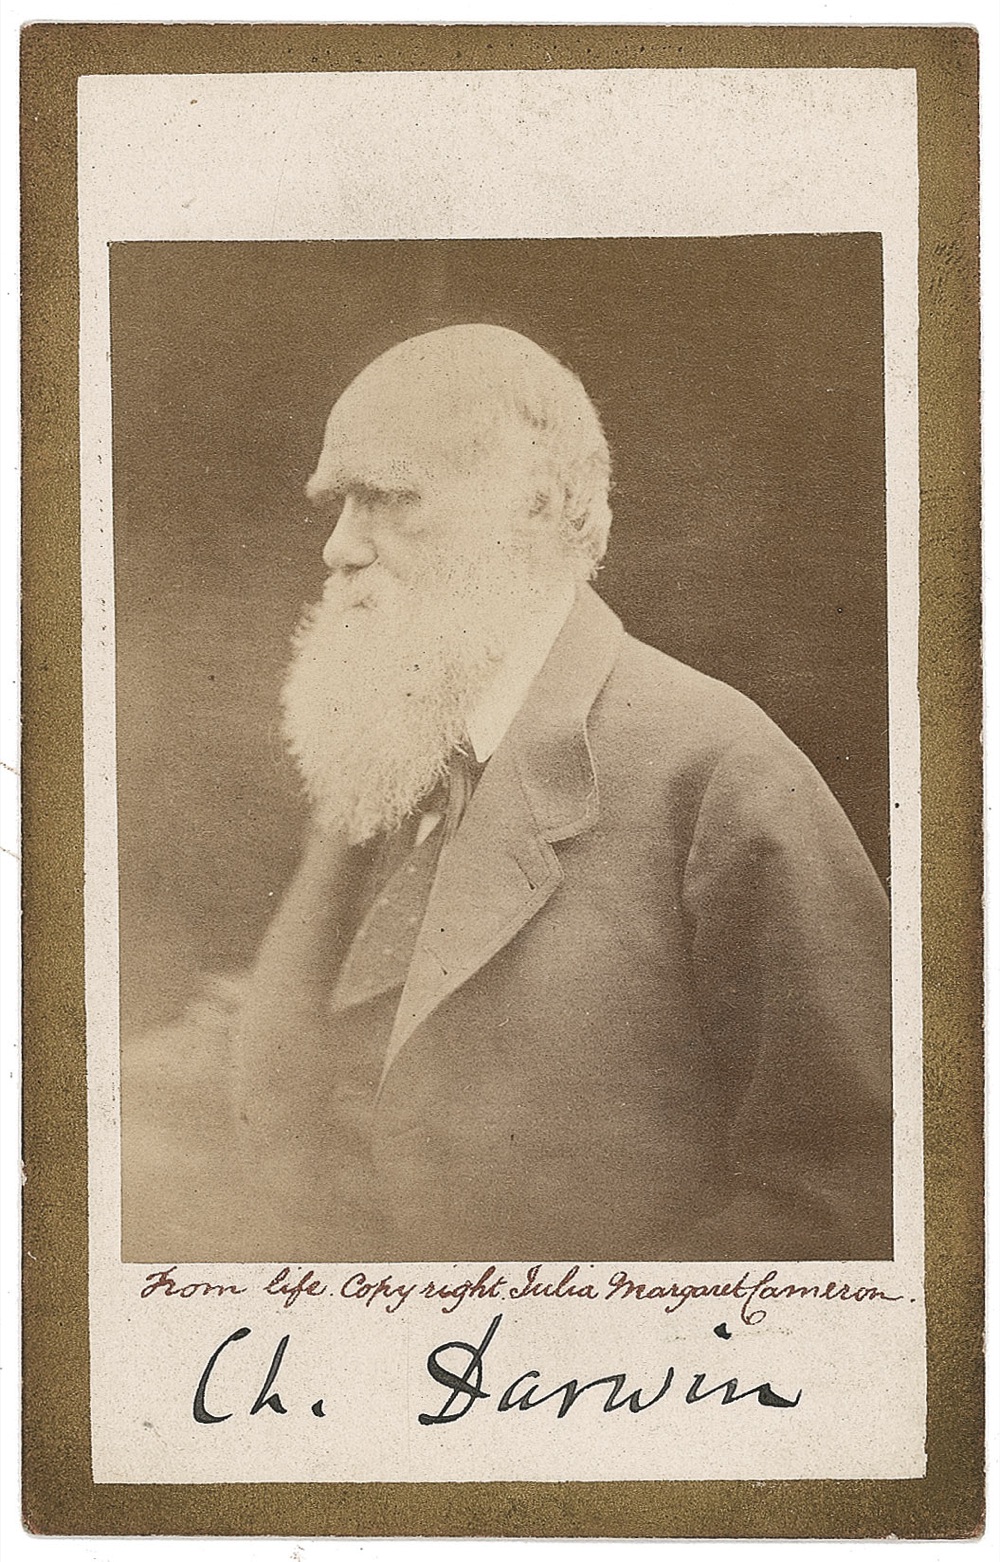 Lot #244 Charles Darwin